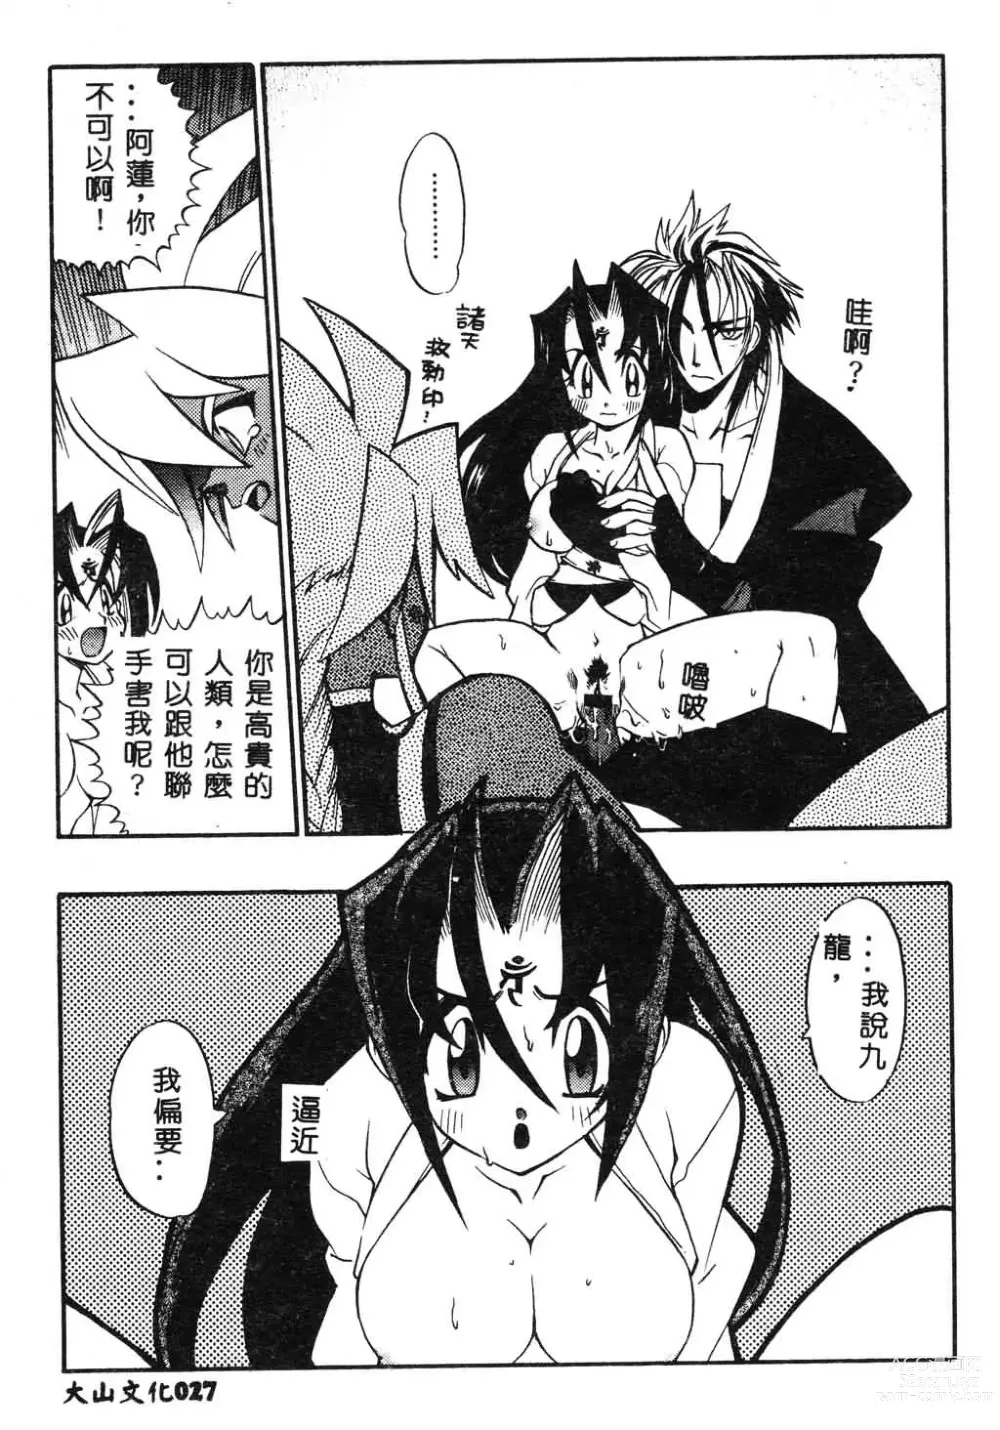 Page 28 of manga Fuusatsu Hyakke